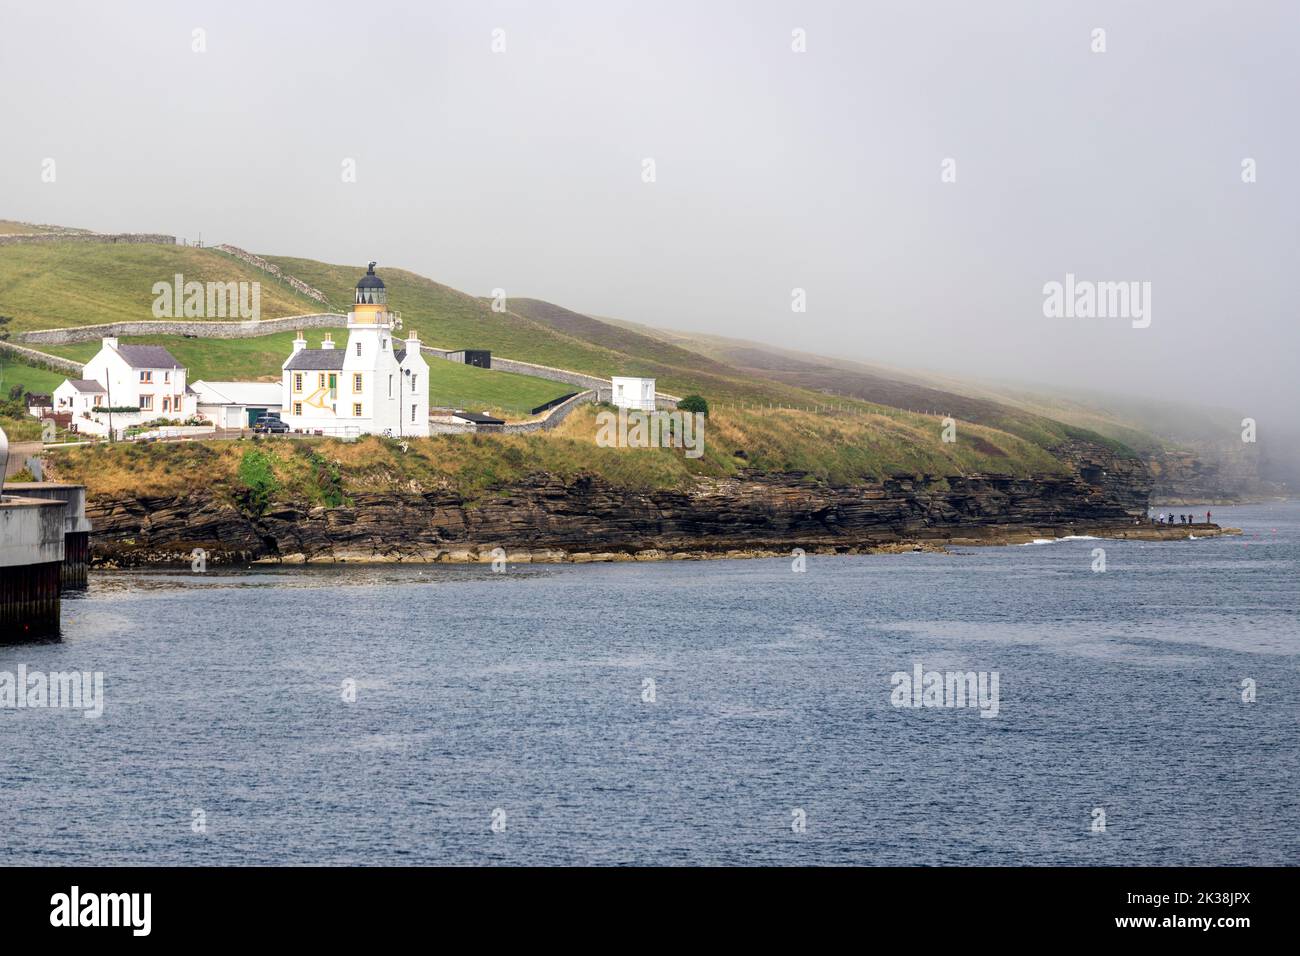 Holburn Head Lighthouse, Scrabster, Thurso Bay, Caithness, Escocia, REINO UNIDO Foto de stock